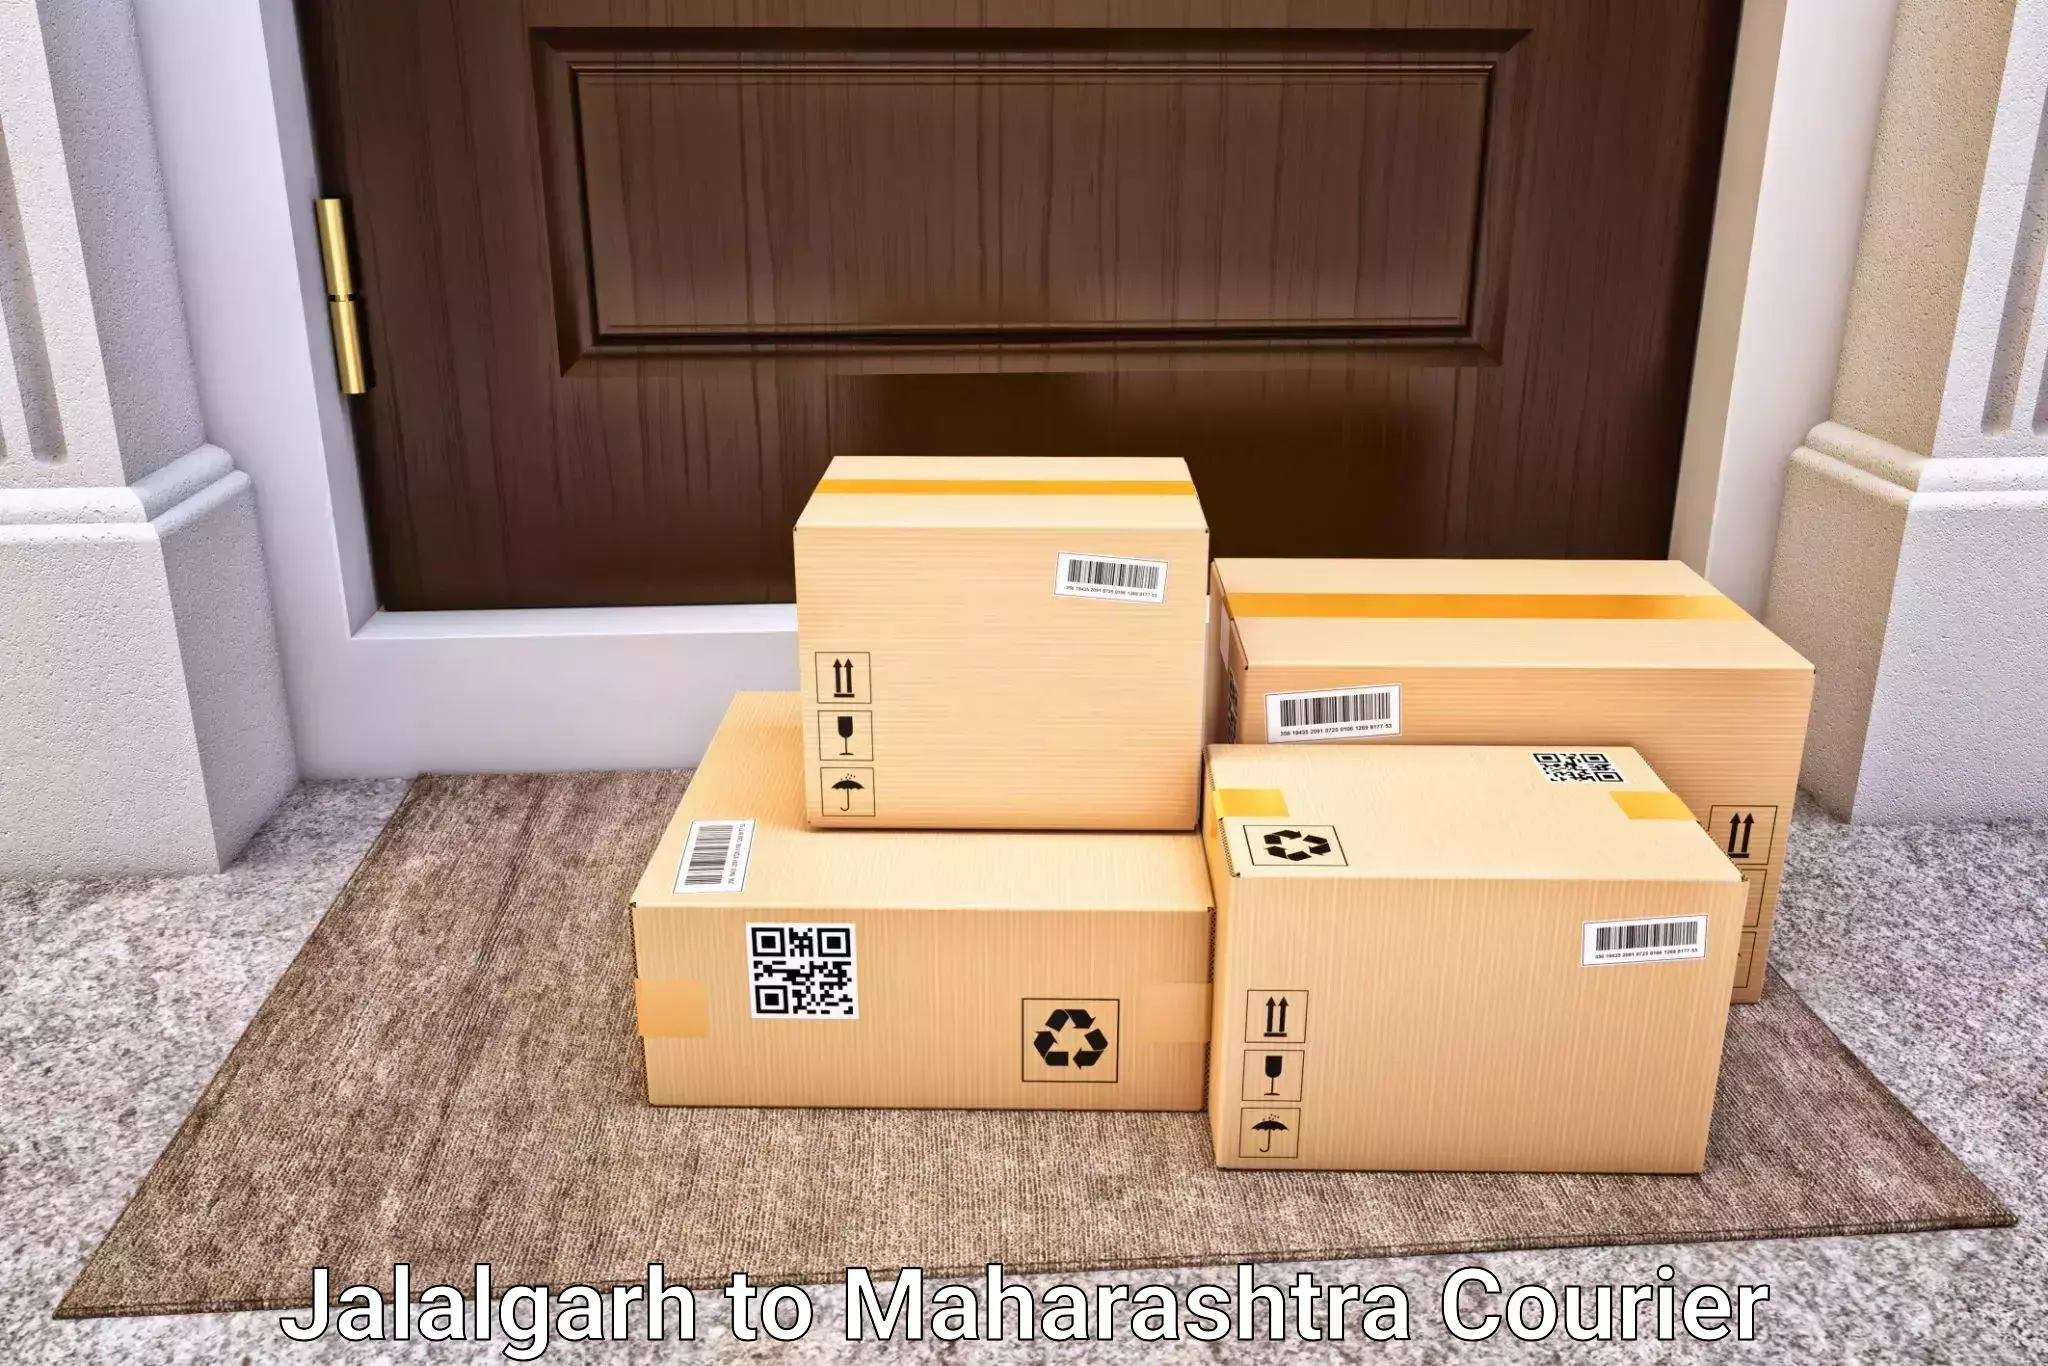 Luggage delivery news Jalalgarh to IIT Mumbai